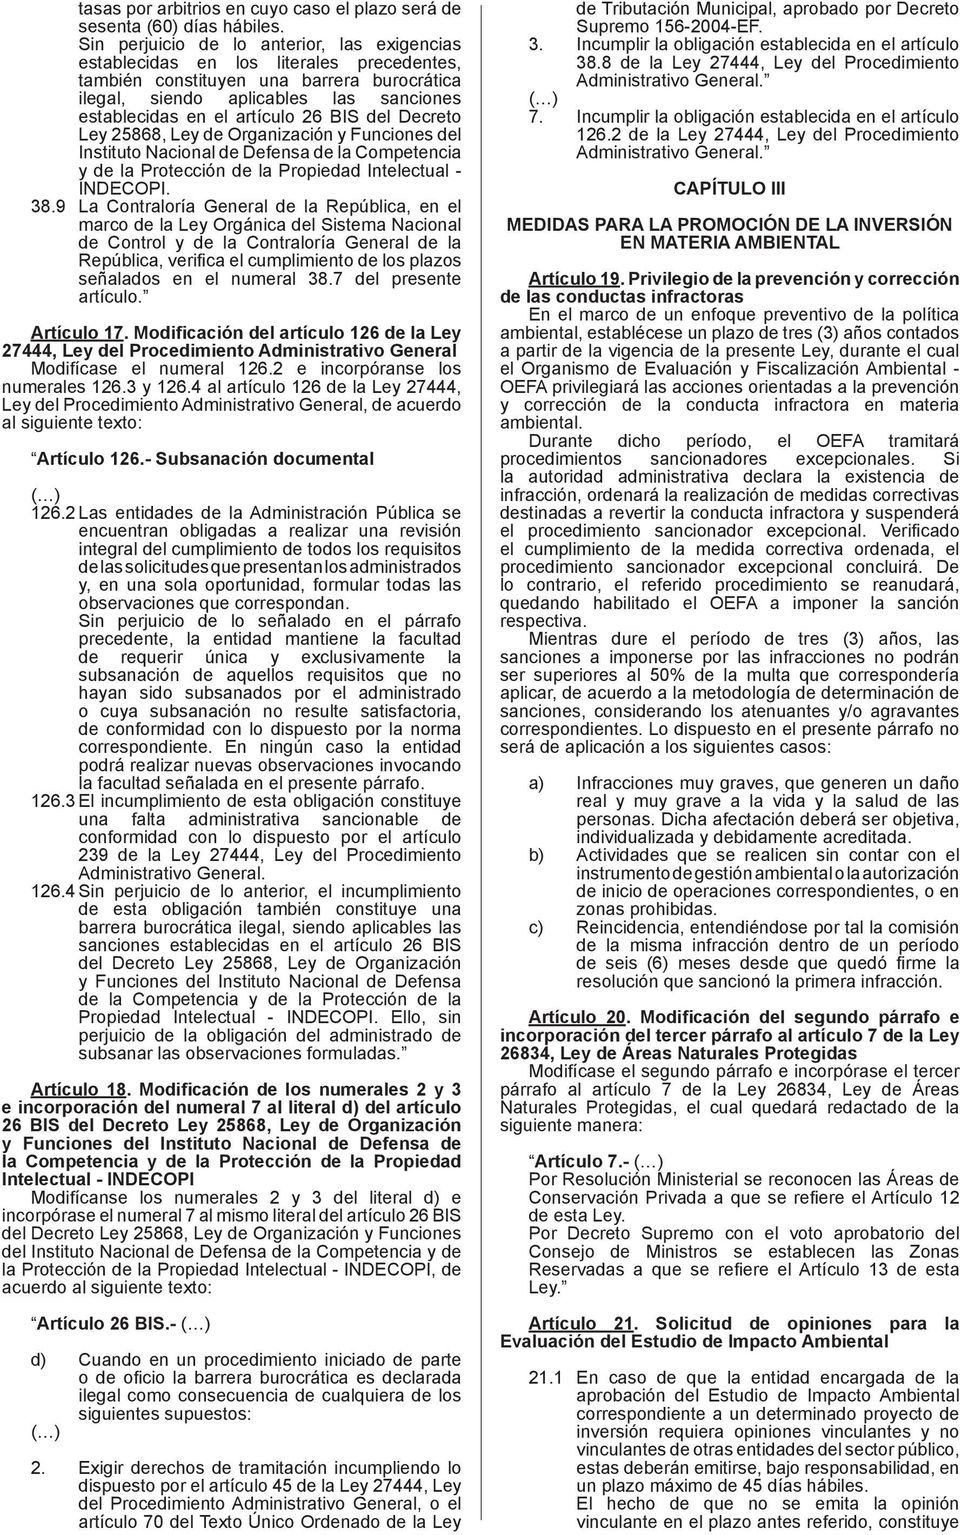 26 BIS del Decreto Ley 25868, Ley de Organización y Funciones del Instituto Nacional de Defensa de la Competencia y de la Protección de la Propiedad Intelectual - INDECOPI. 38.